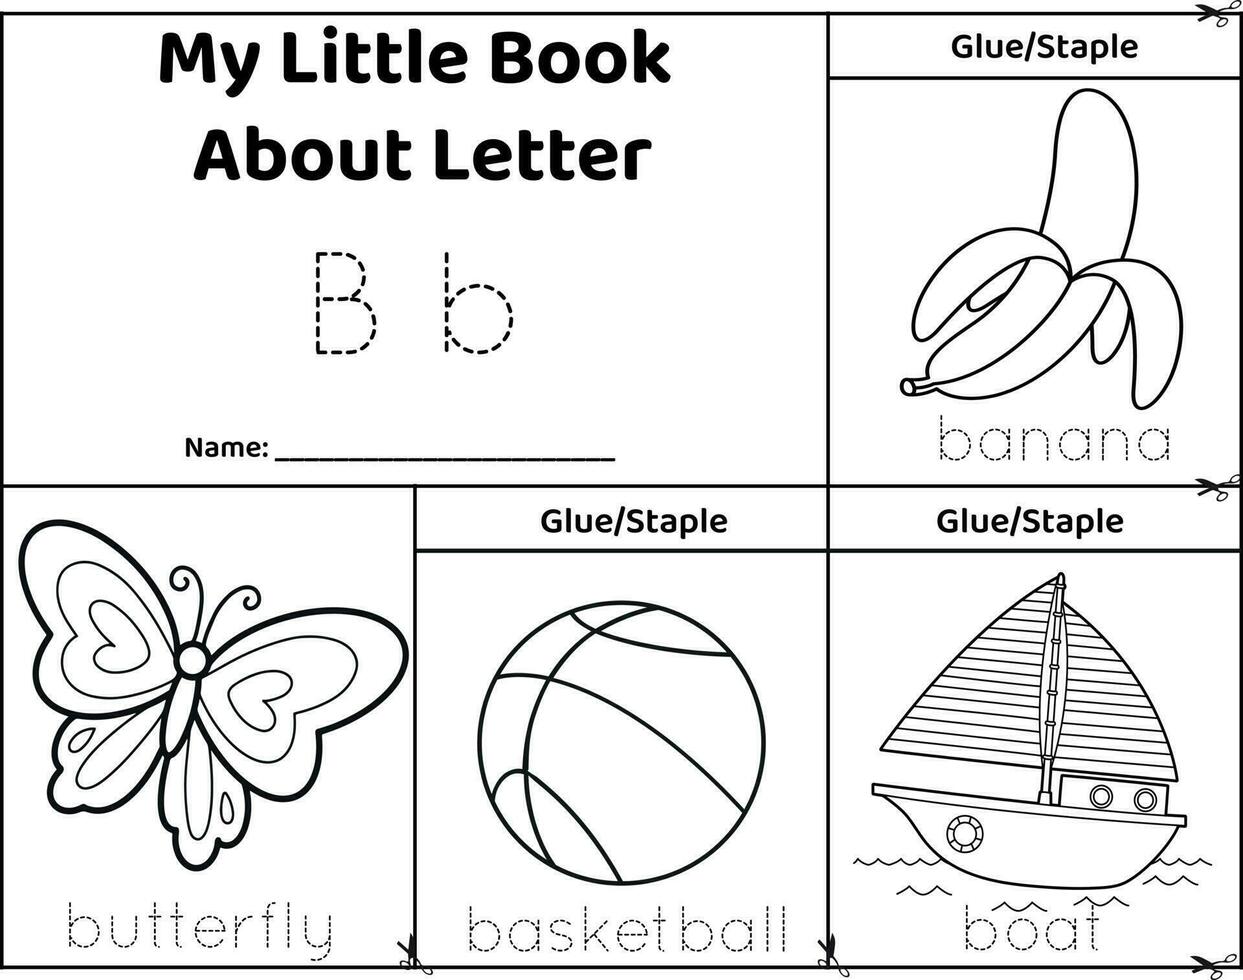 Logical printable worksheet alphabet beginning sounds flip book in